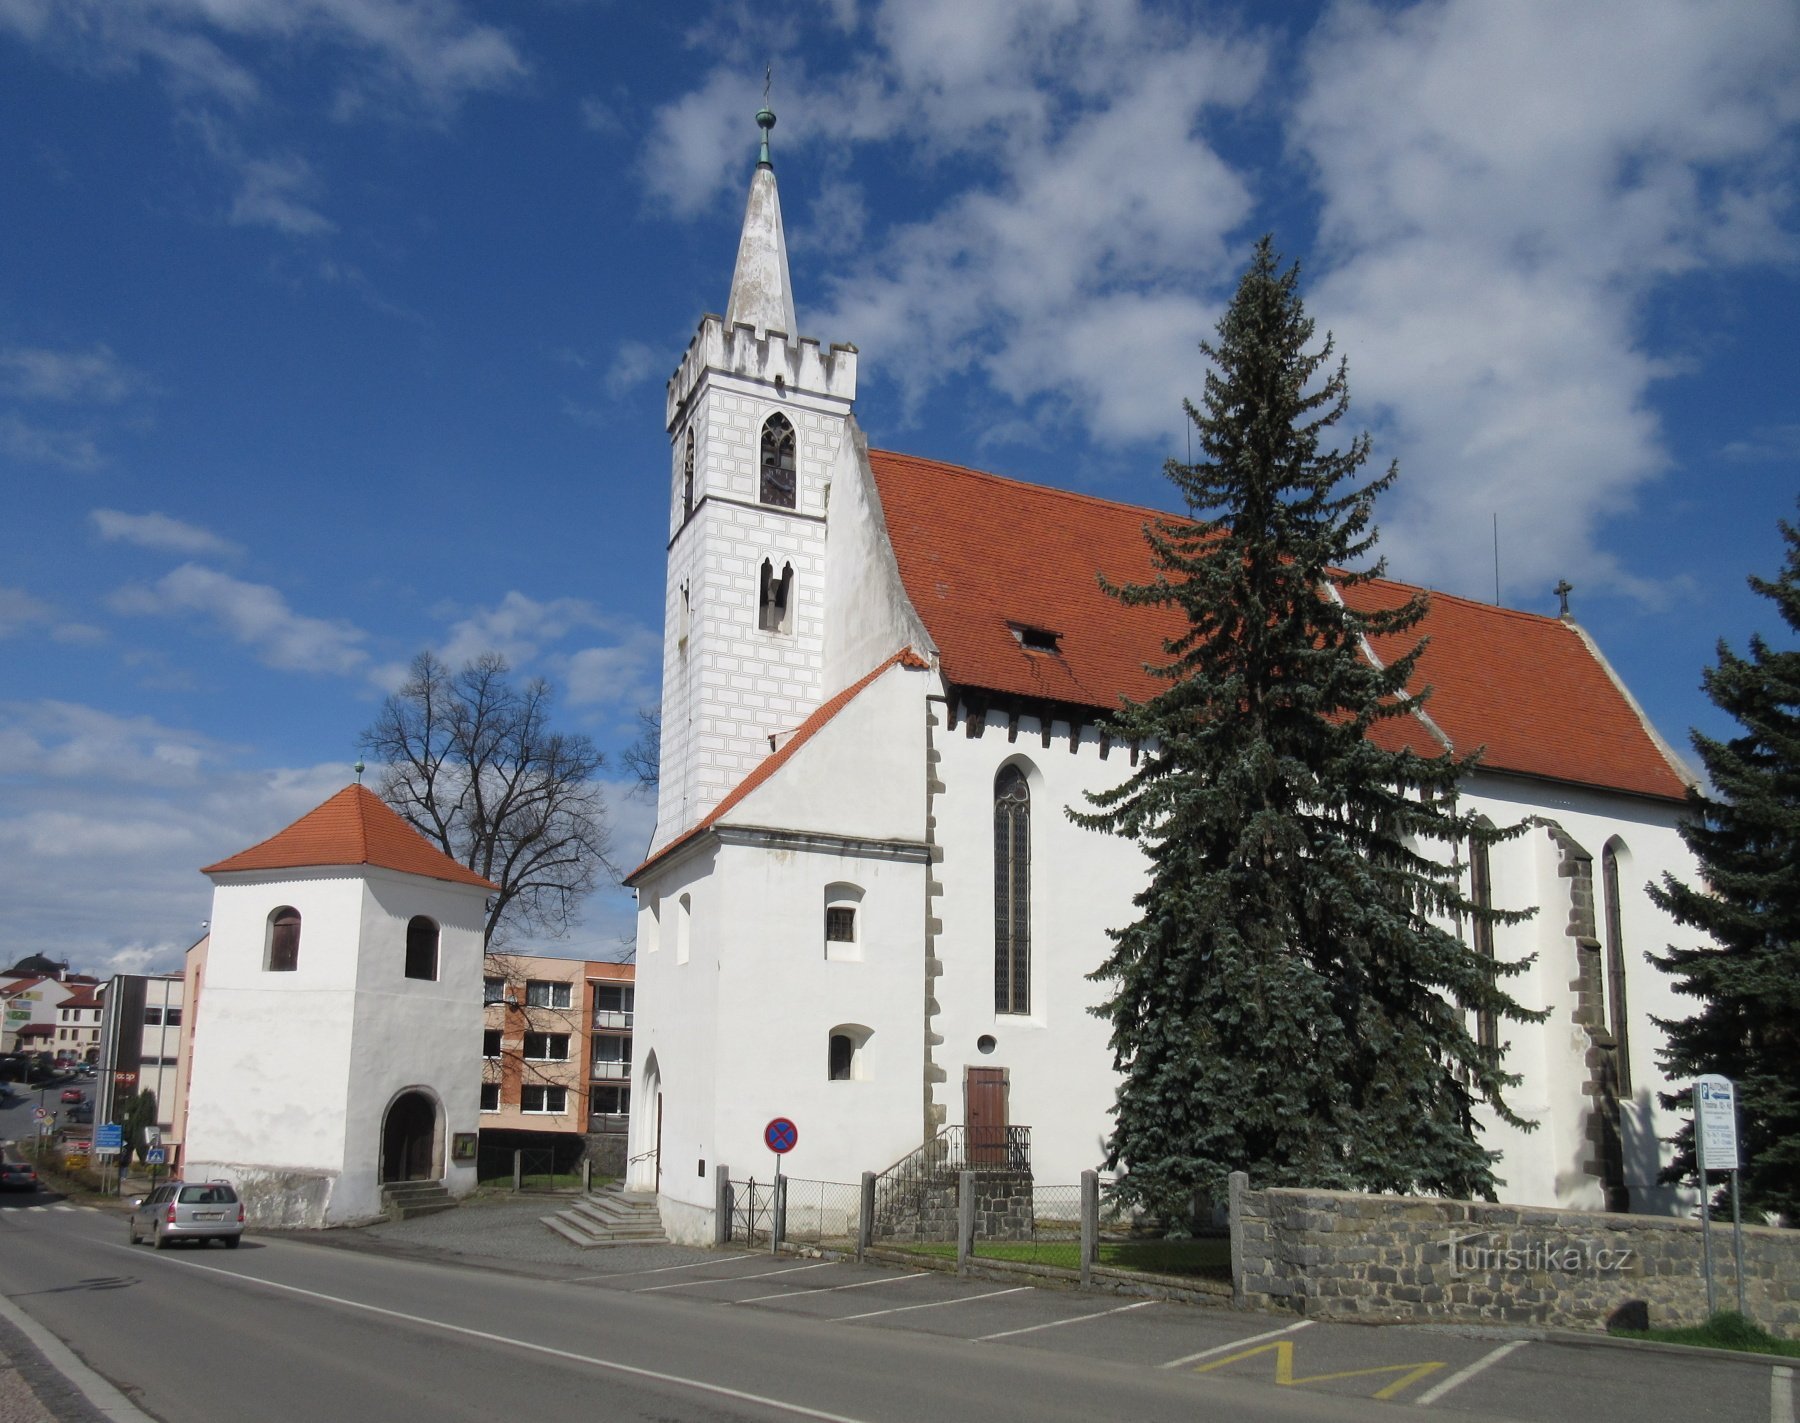 Sedlčany - istorie și centrul orașului